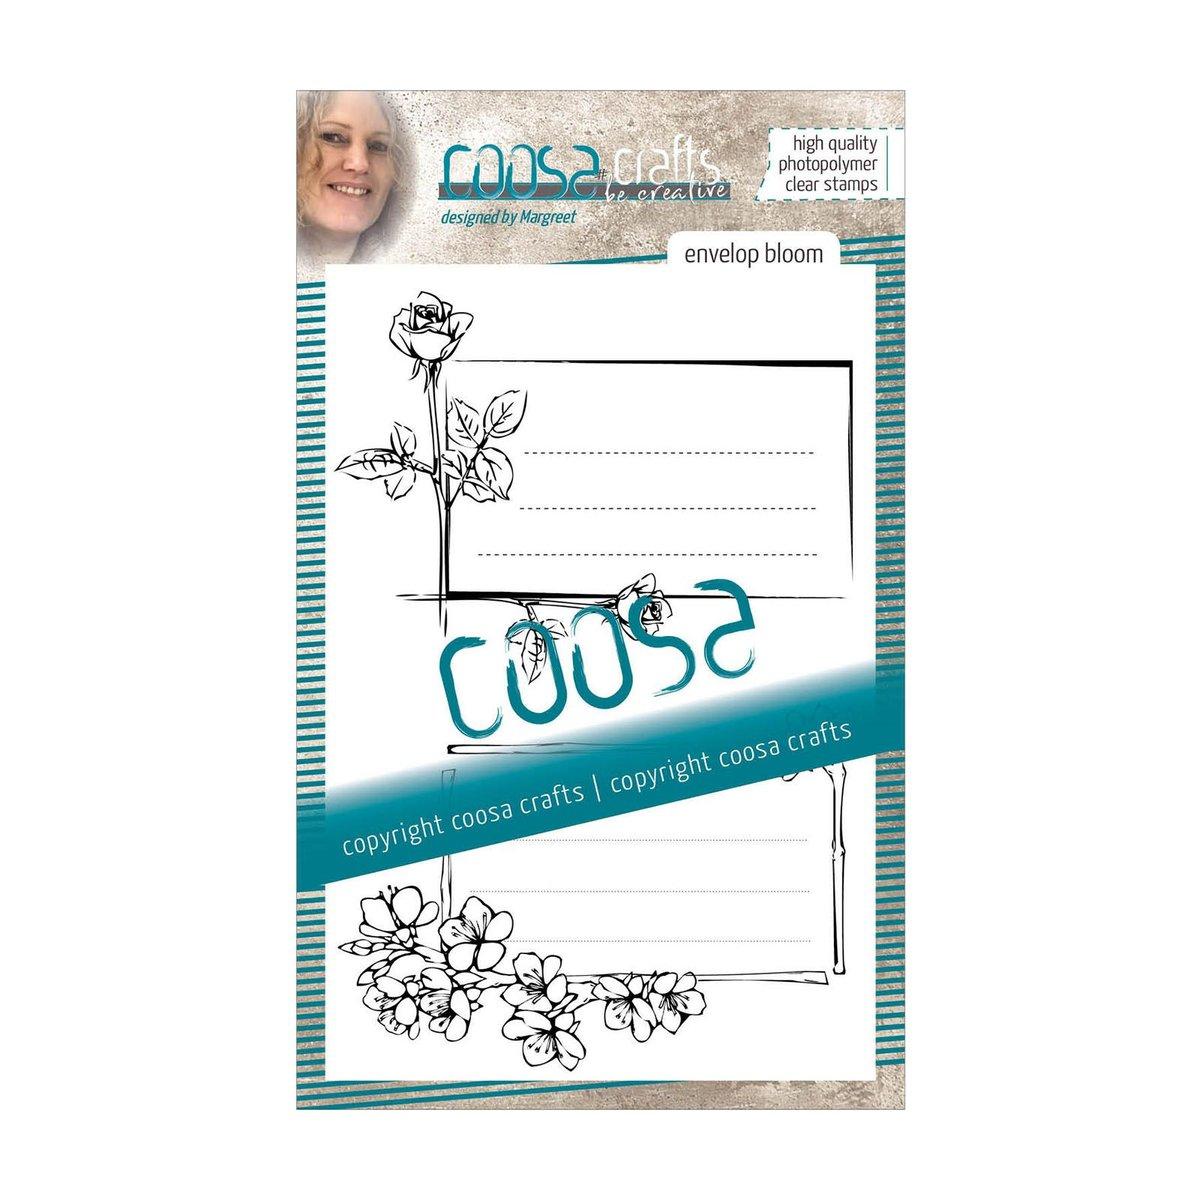 COOSA Crafts | Clear Stempel #4 Envelope Bloom (En)